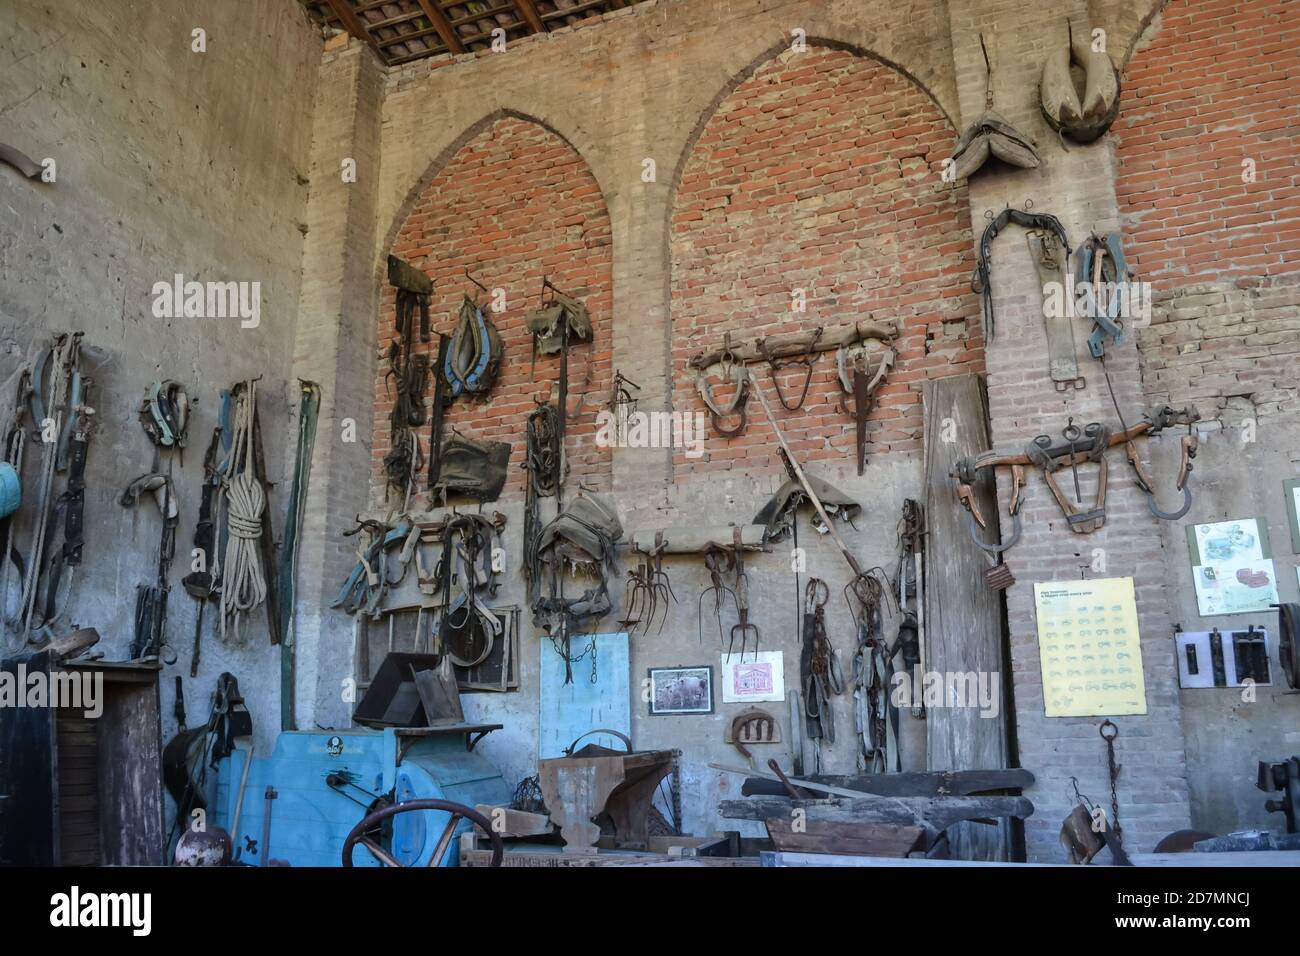 Landwirtschaftliche Museum mit alten Werkzeugen in der Landwirtschaft im letzten Jahrhundert verwendet.Park des Schlosses von Grazzano Visconti, Italien. Stockfoto